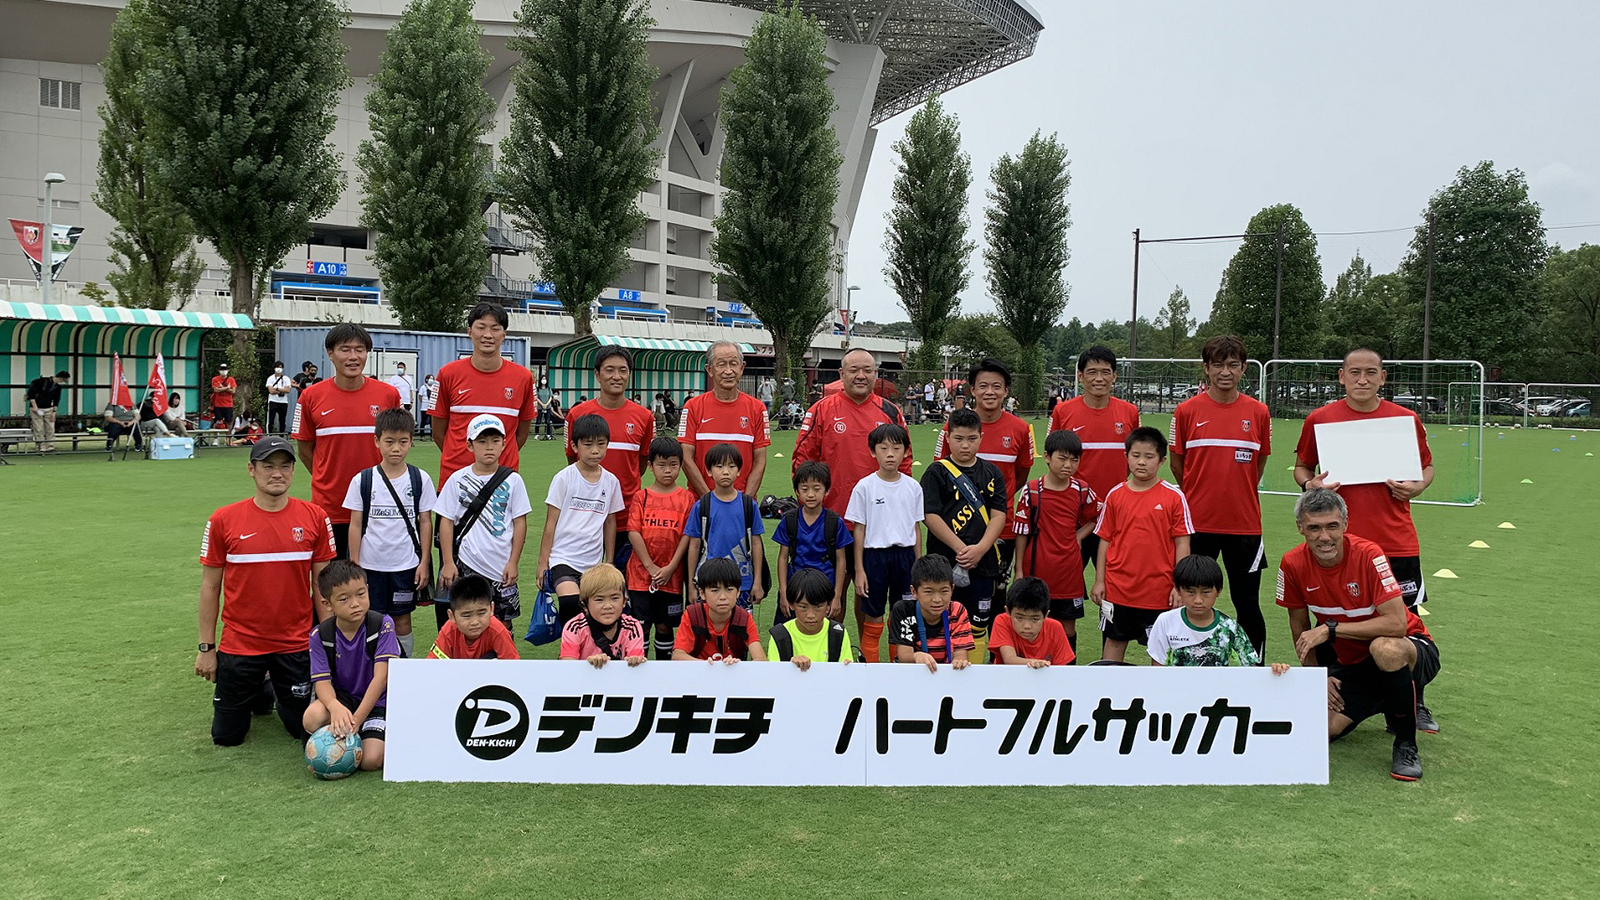 รับสมัครผู้เข้าร่วมการแข่งขัน Denkichi Heart-full Soccer วันที่ 3 กันยายน (วันเสาร์)!